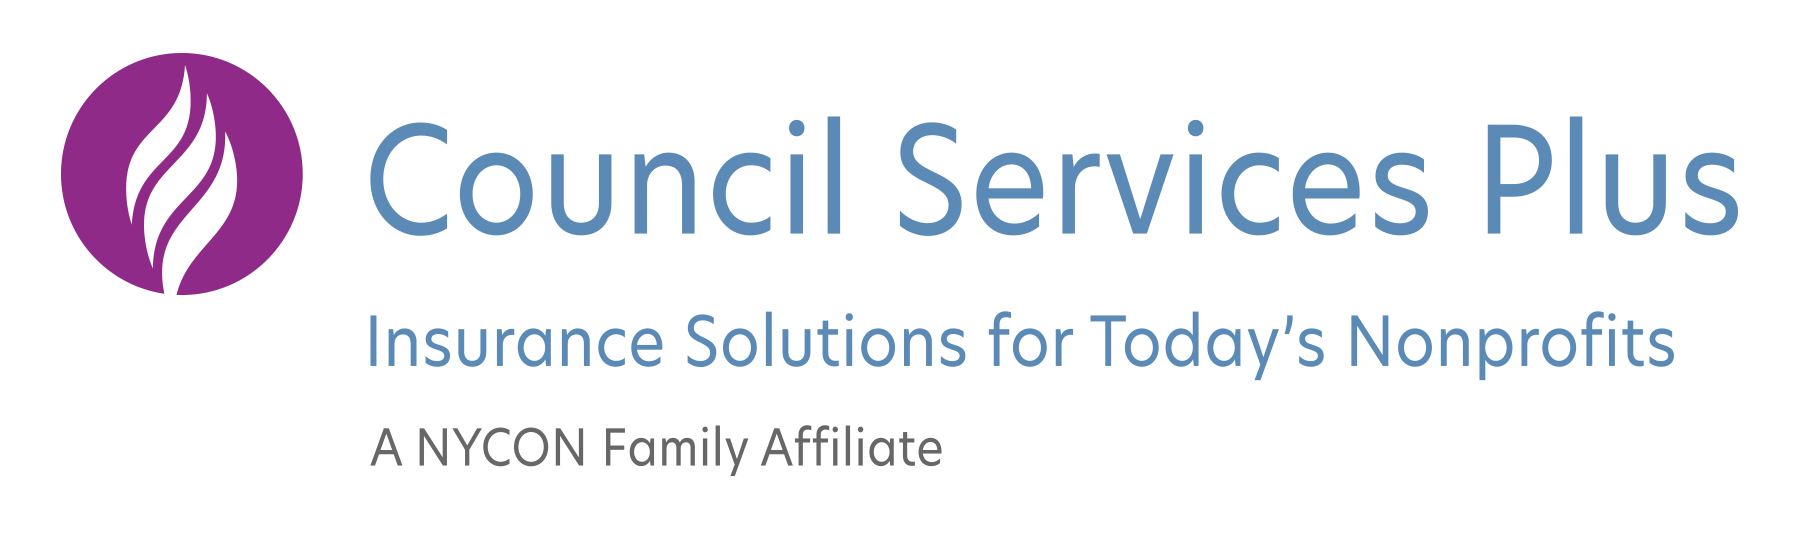 council services plus logo